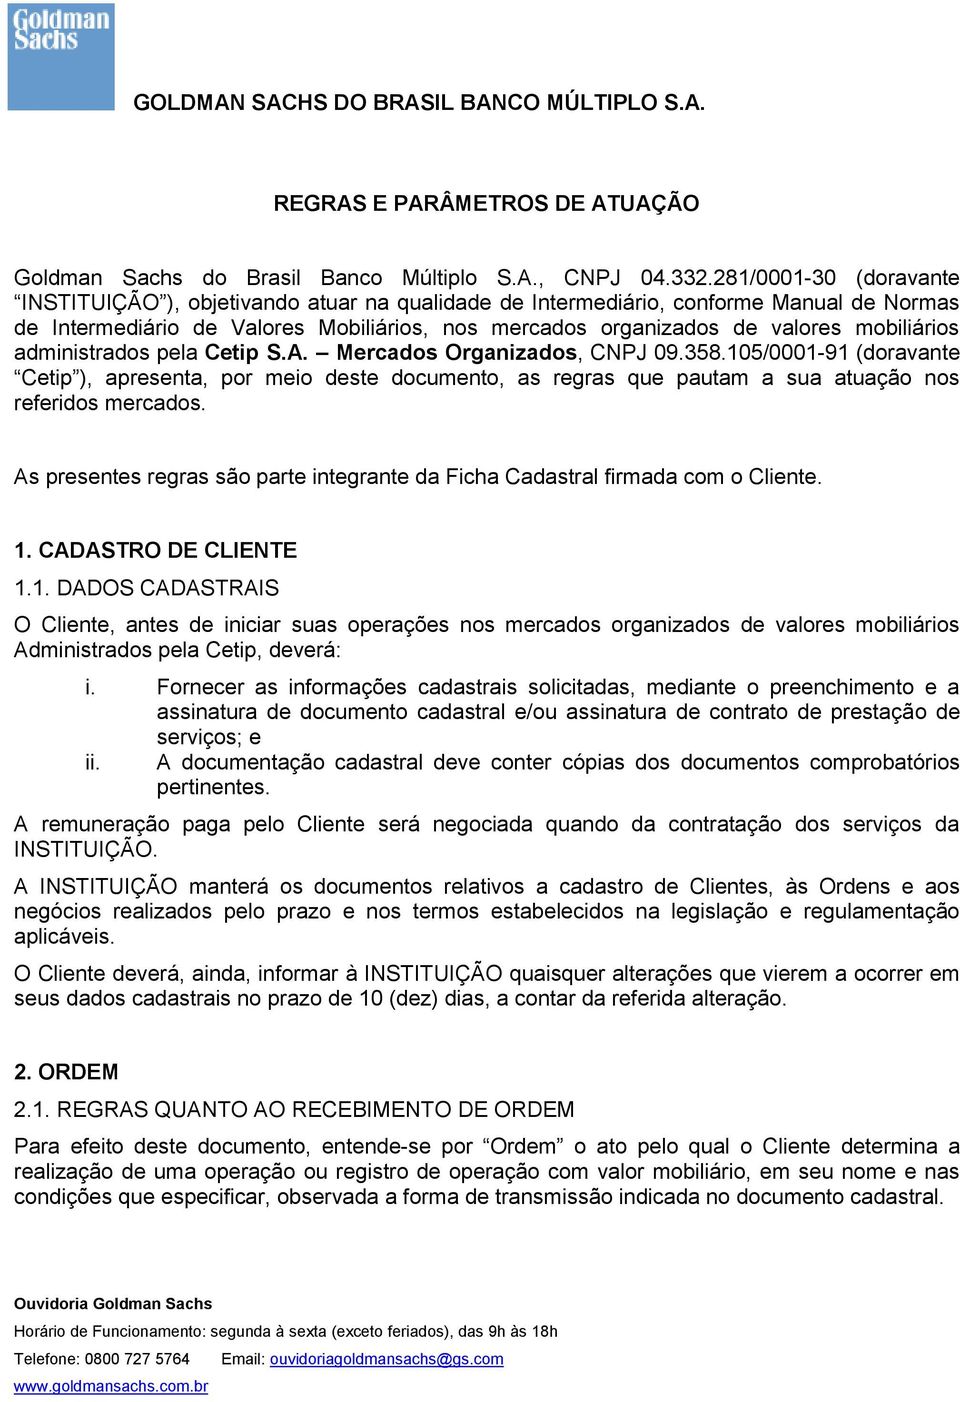 mobiliários administrados pela Cetip S.A. Mercados Organizados, CNPJ 09.358.